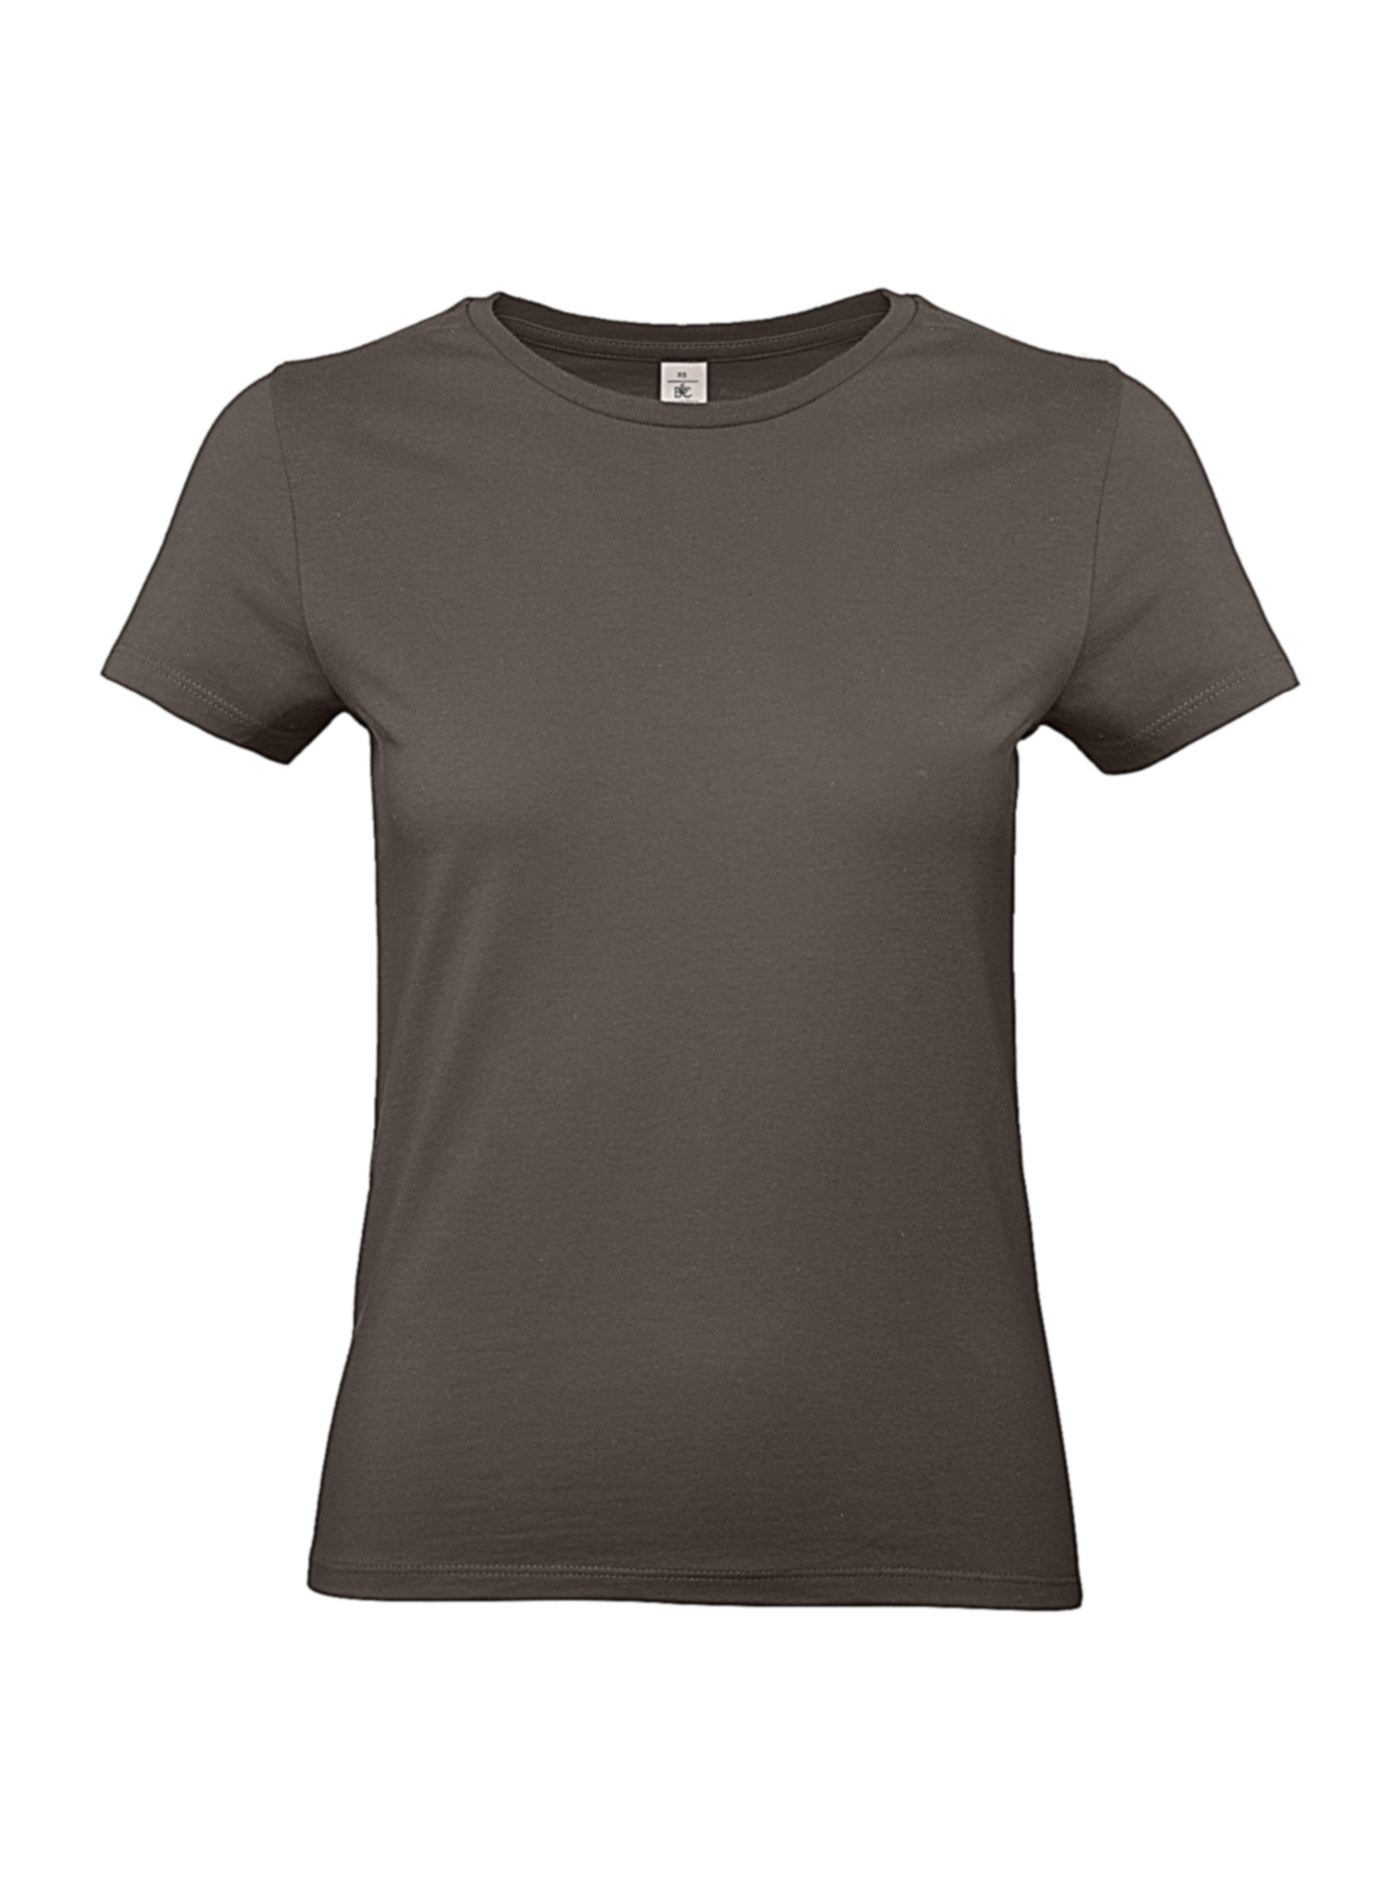 Silnější bavlněné dámské tričko - Hnědá L